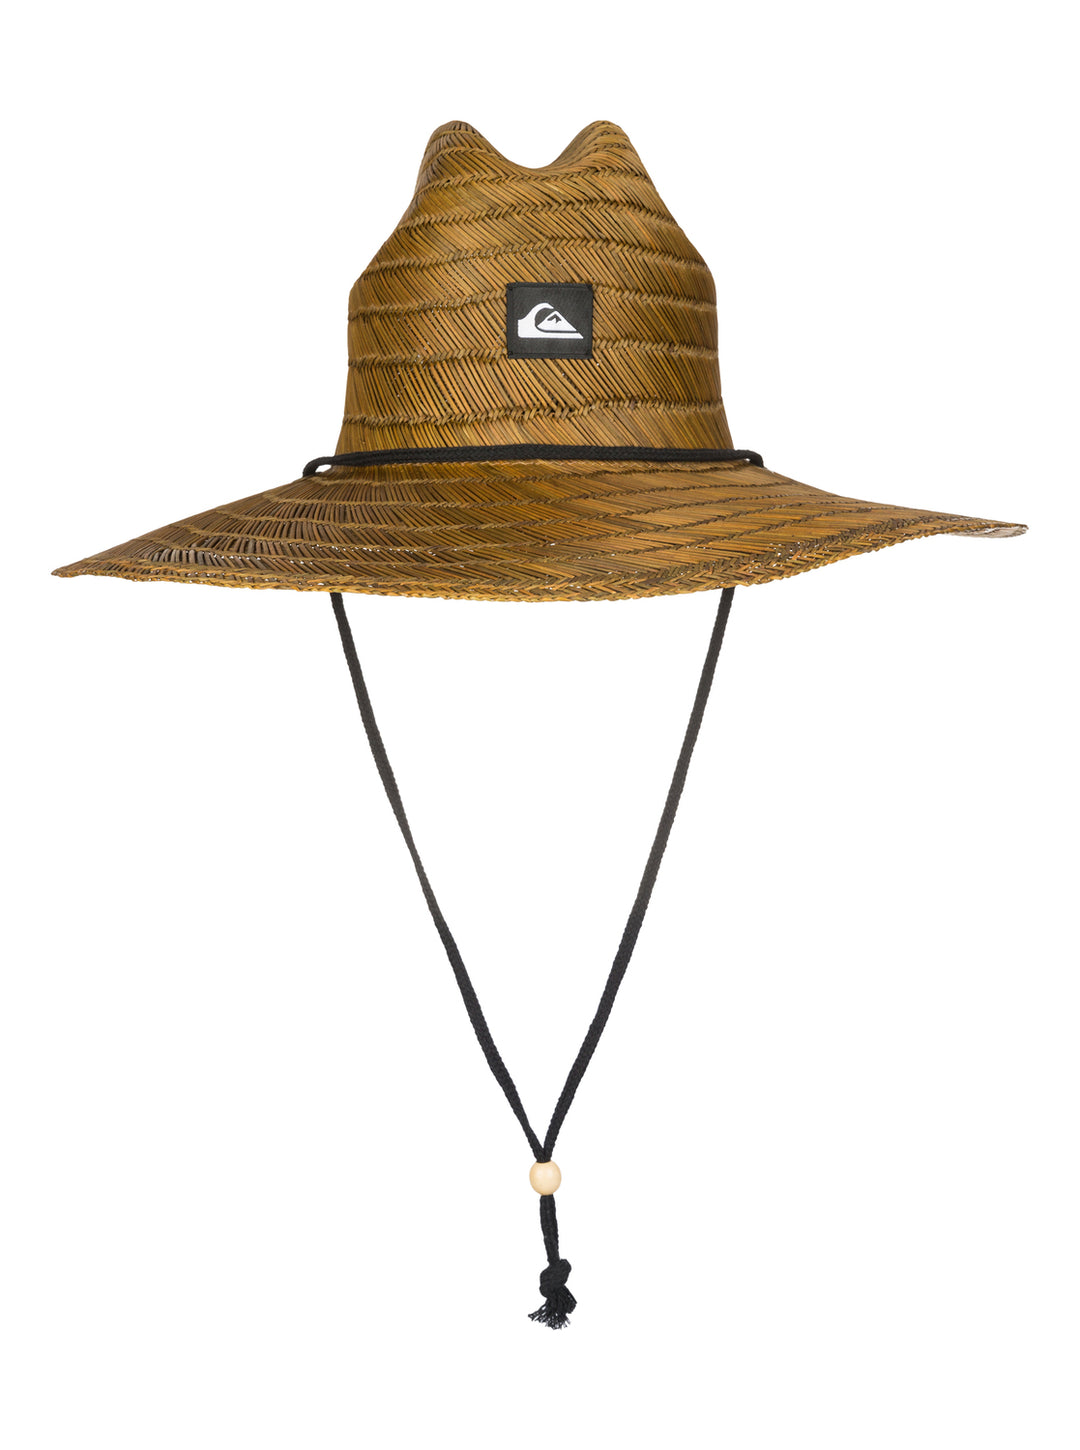 Quiksilver Pierside Straw Lifeguard Hat - Dark Brown - Sun Diego Boardshop